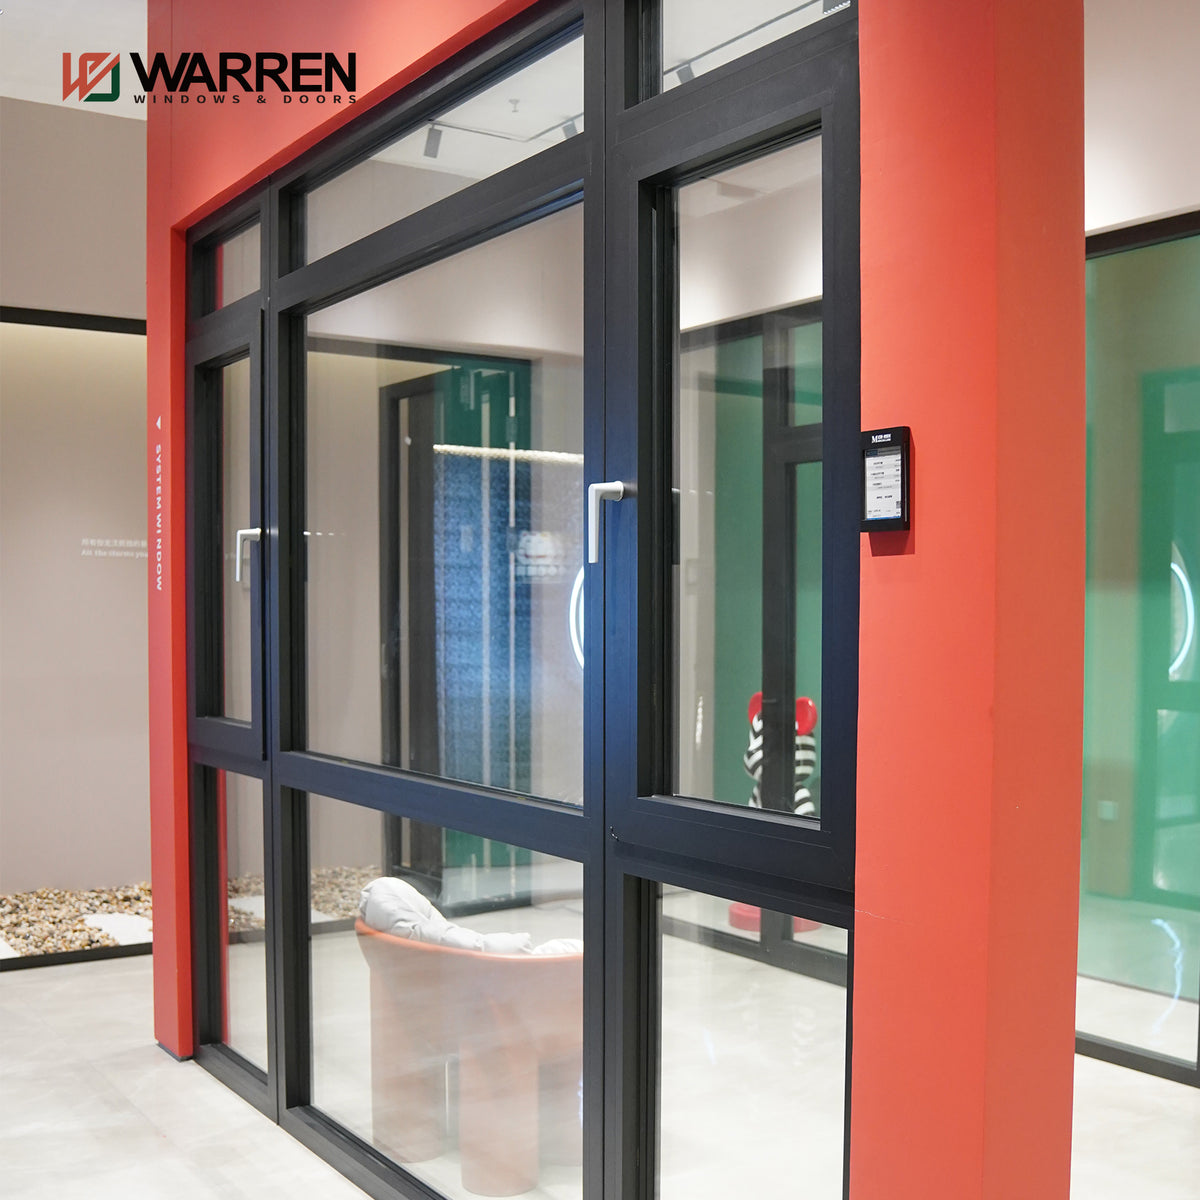 Warren Modern Aluminium Tilt and Turn Windows Energy Efficient Aluminum Frame Casement Window Tempered Glass Windows